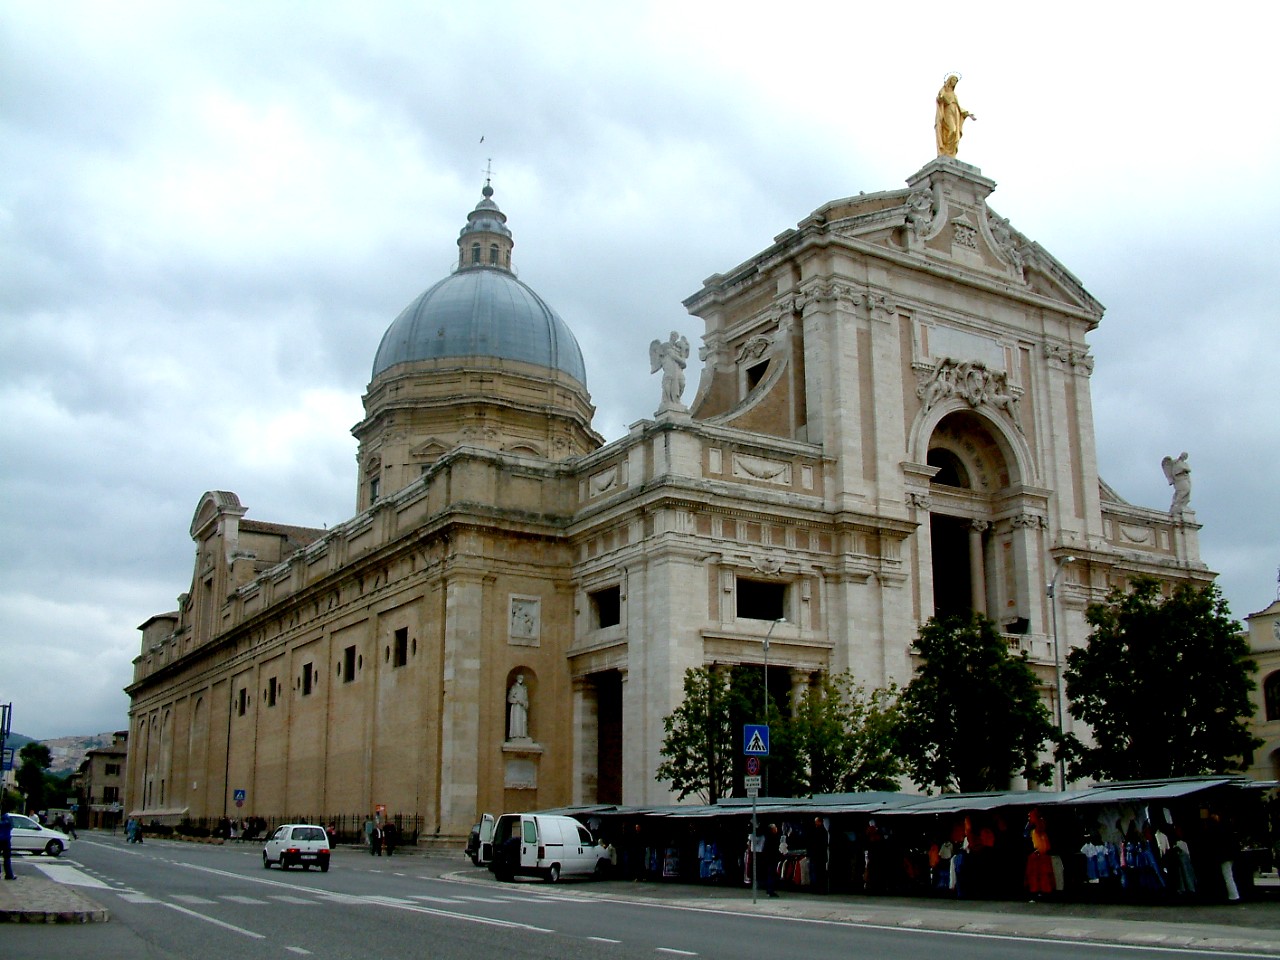 Santa Maria degli Angeli e dei Martiri - Biancagiulia B&B, Bed and Breakfast near Rome Termini Train Station